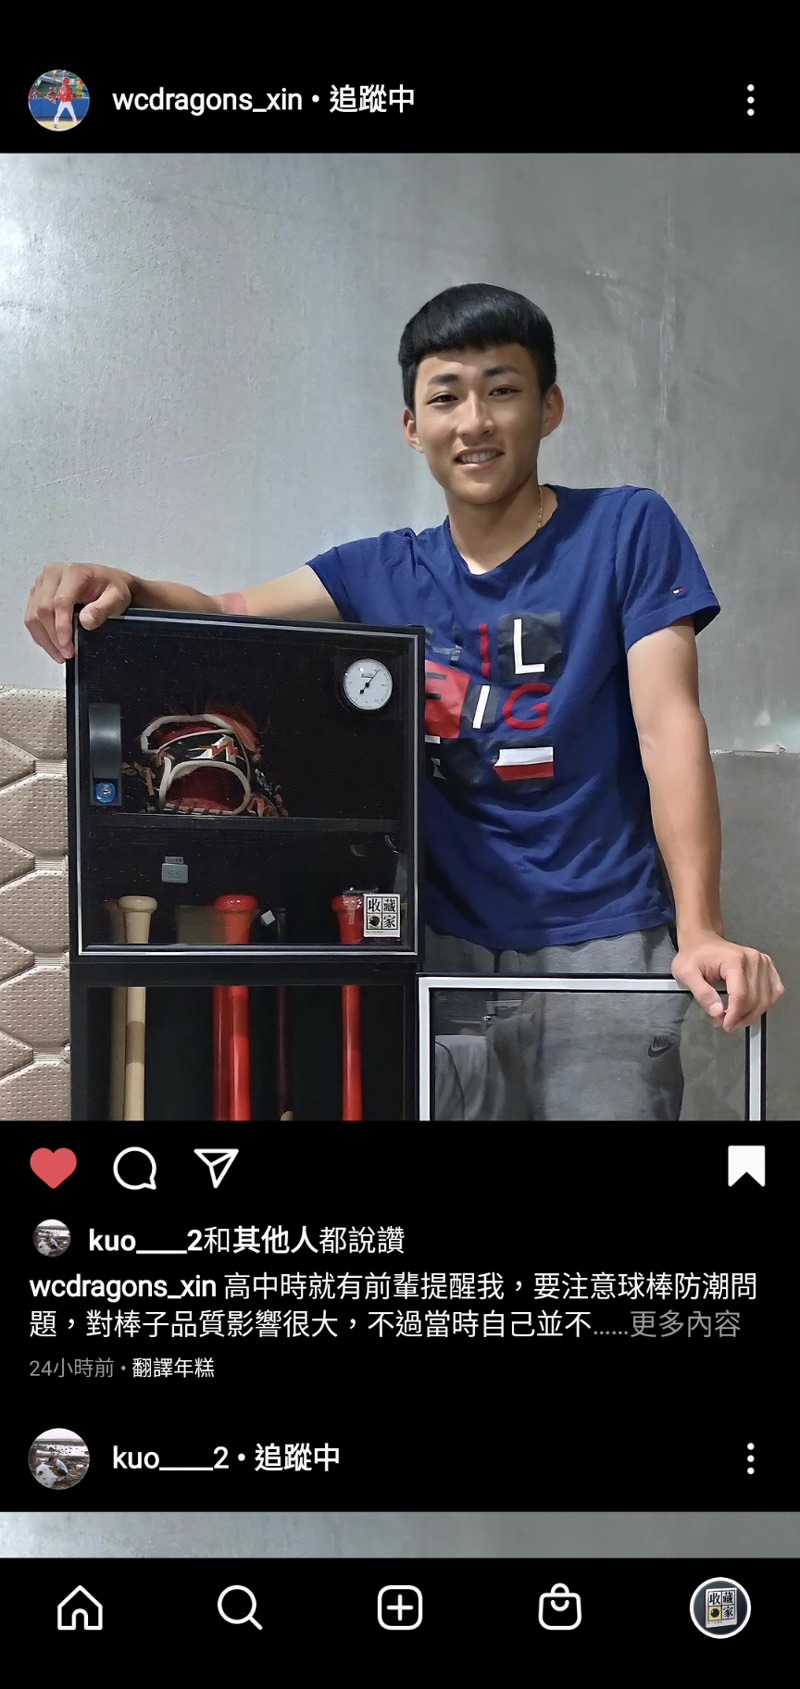 中華職棒味全龍選手郭天信 instagram 分享收藏家AX-180保存棒球球具